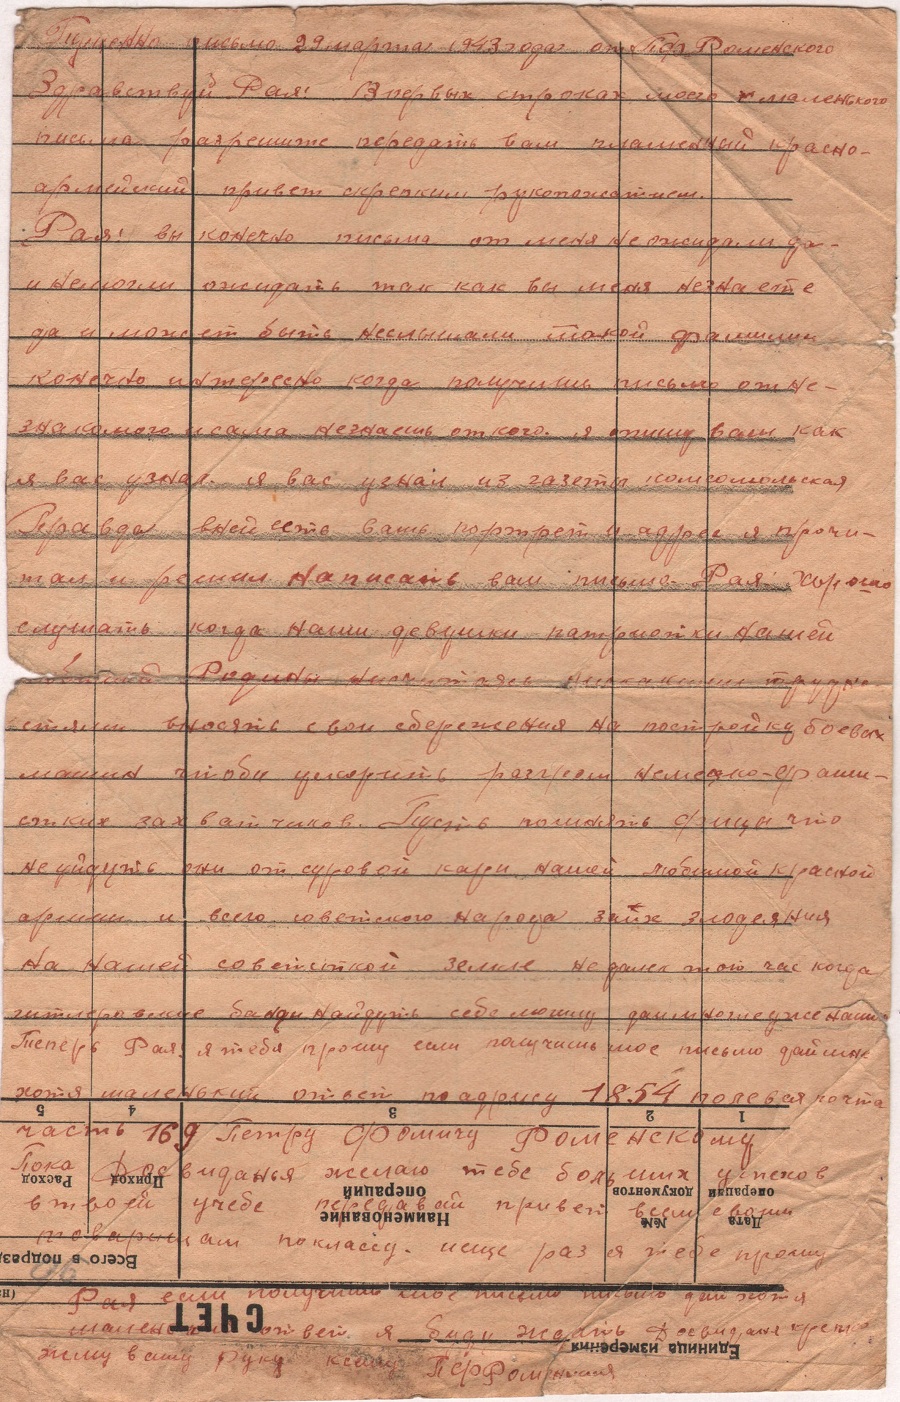 Коровайко МПК14422-82 Письмо от Роменского П.Ф. от 29.03.1943 г. стр.1